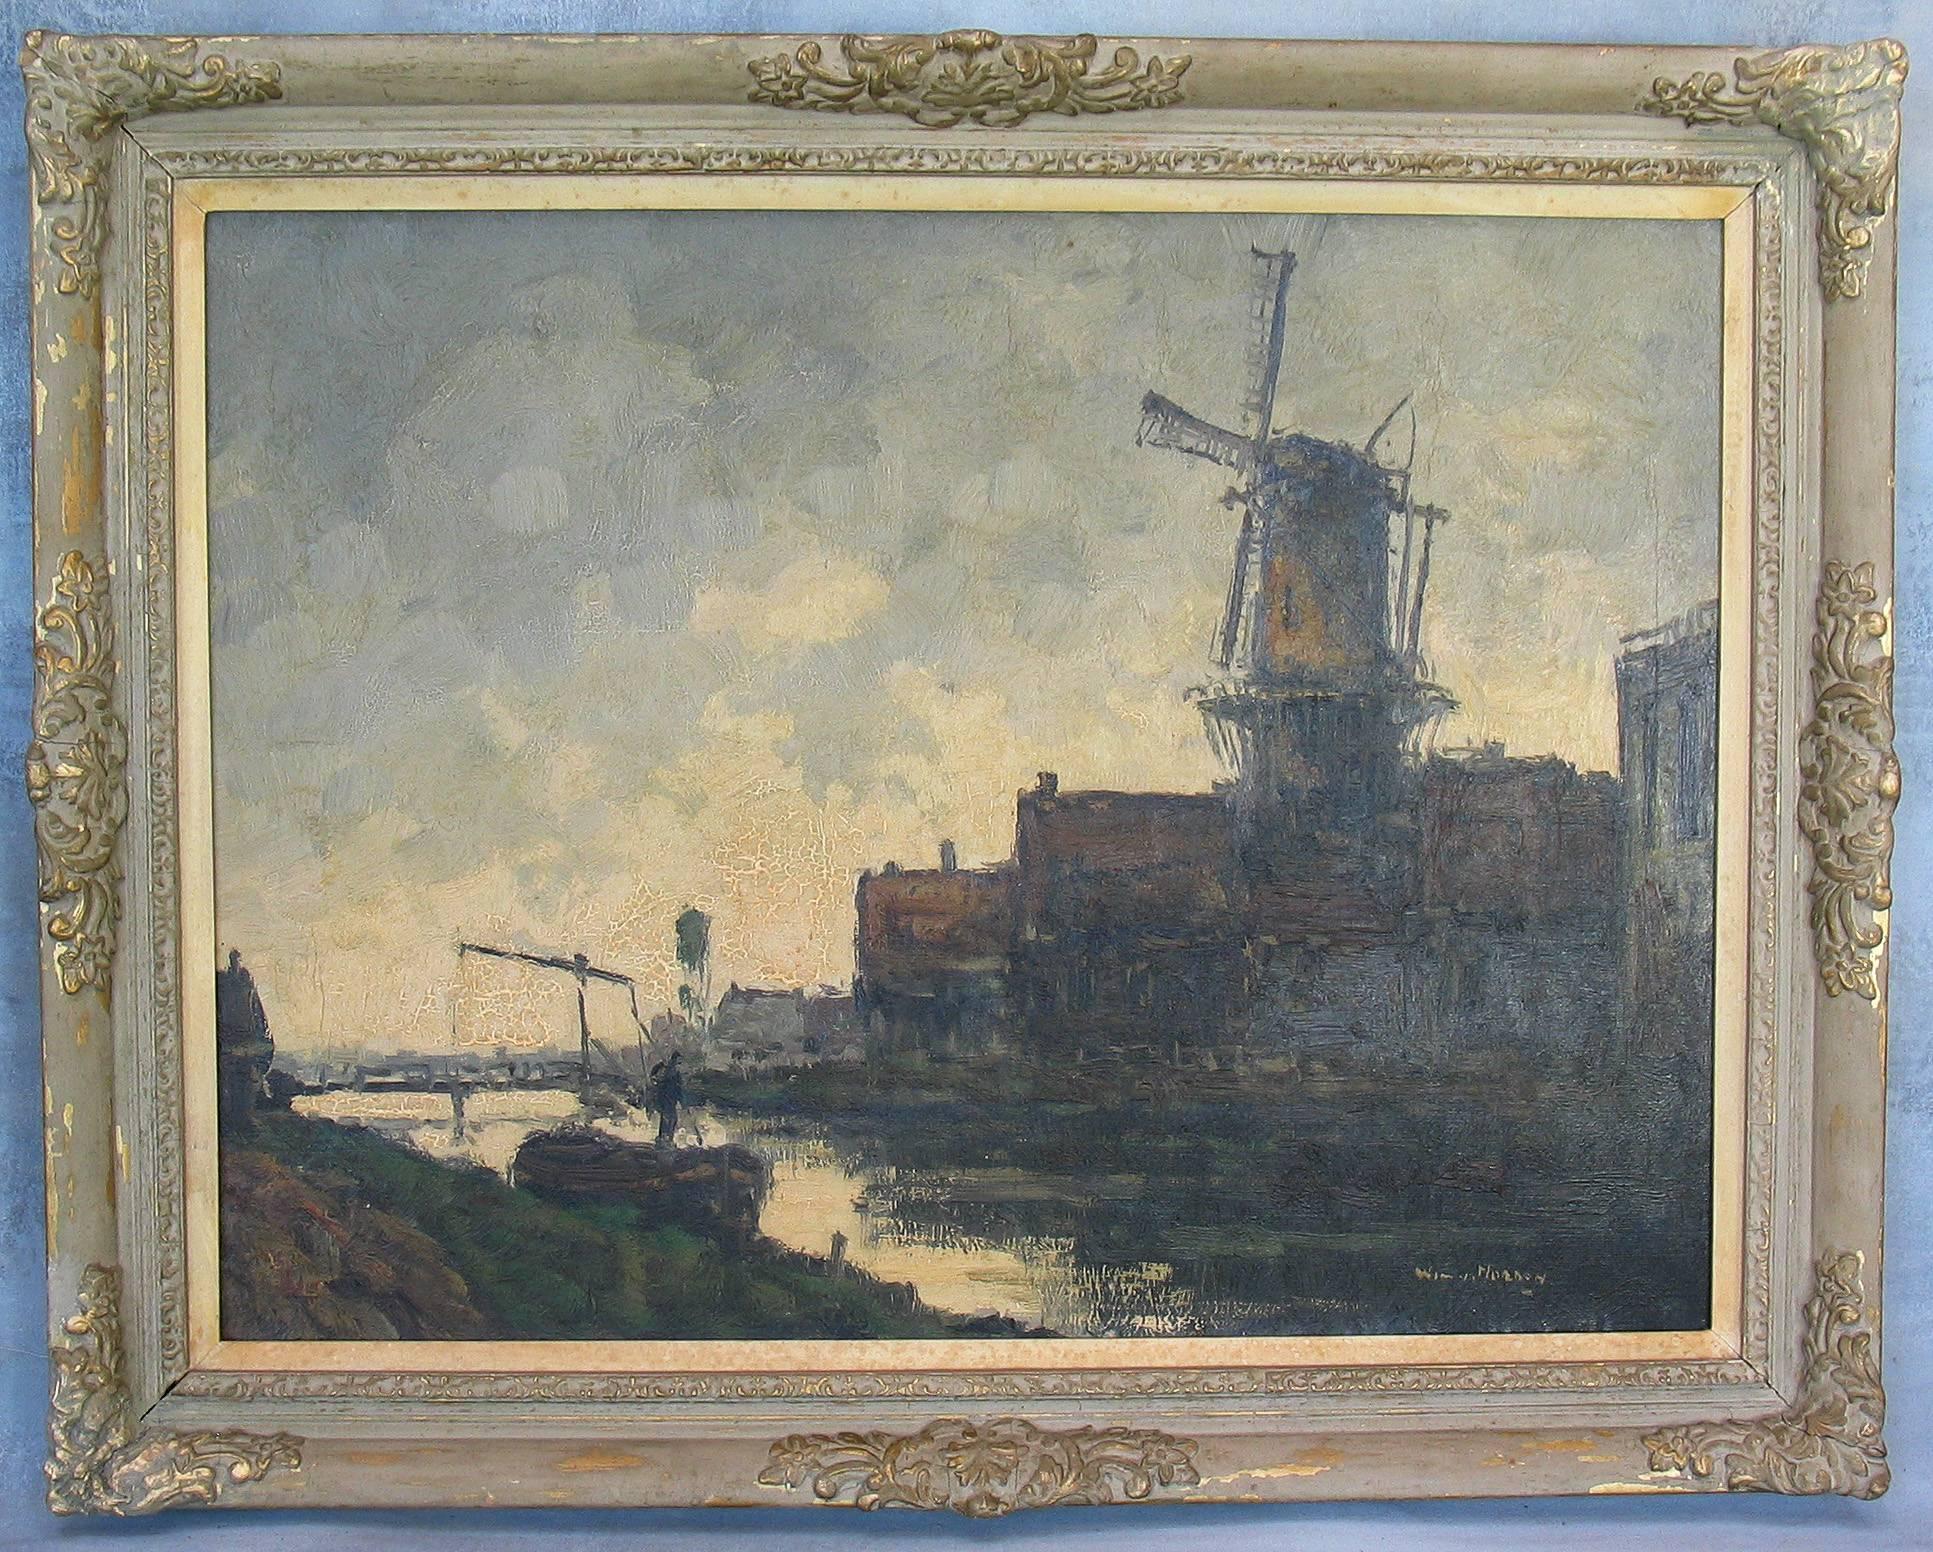 Wim van Norden (artiste néerlandais 1917-2001) Paysage hollandais avec canal et moulin à vent, signé Wim V. I. Norden, (signé en bas à droite), huile sur toile mesurant 23